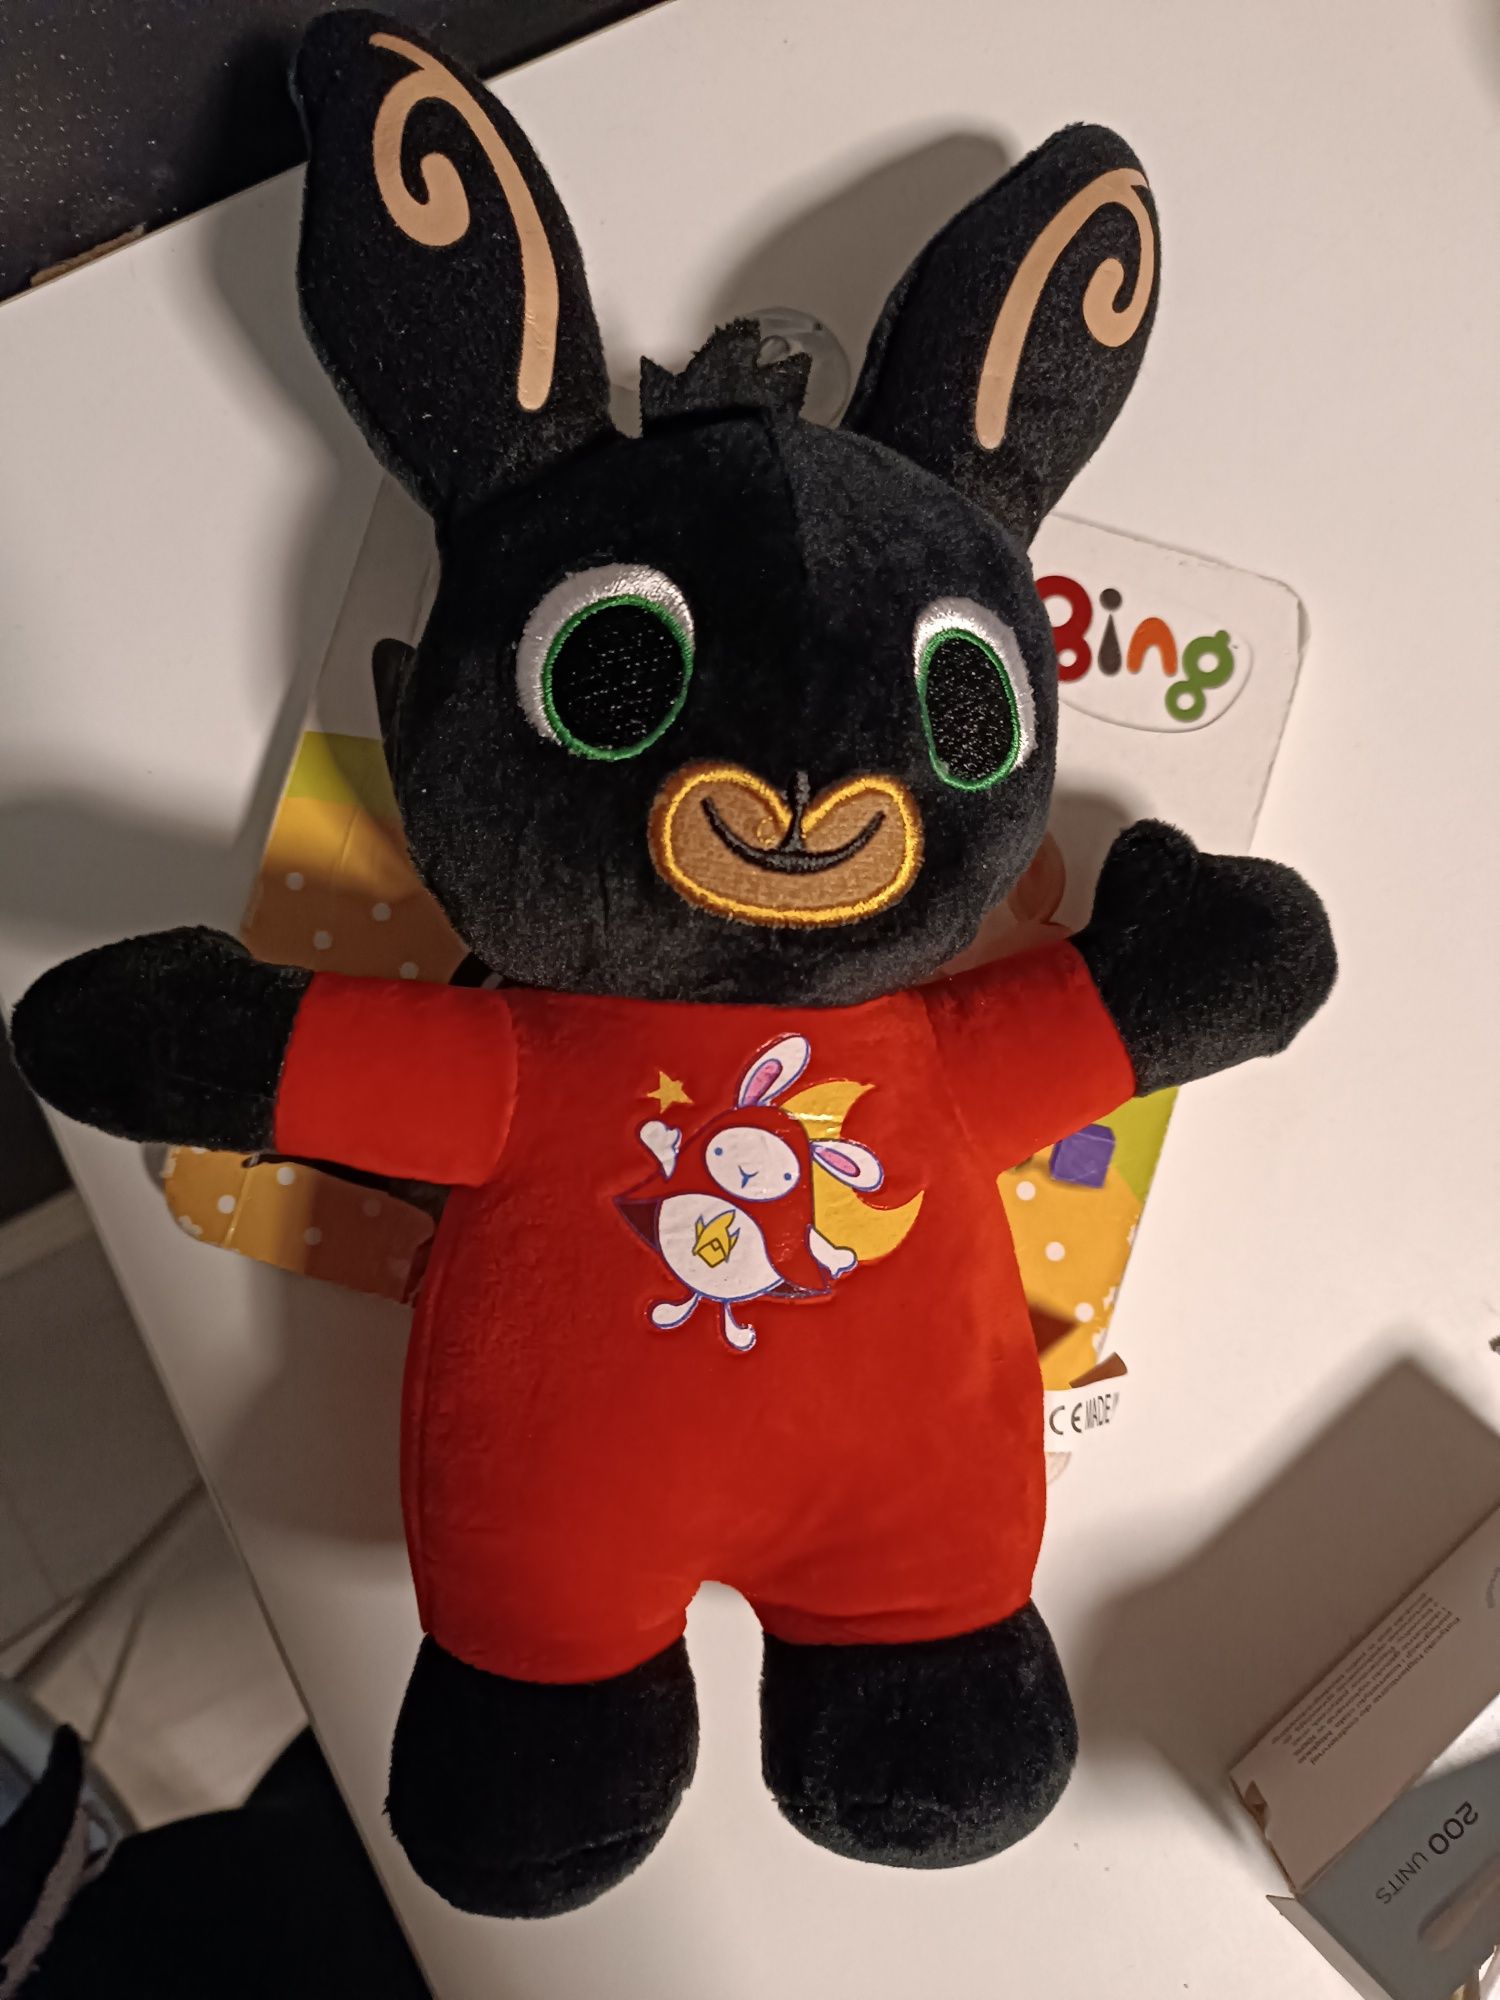 Bing maskotka królik z książeczka